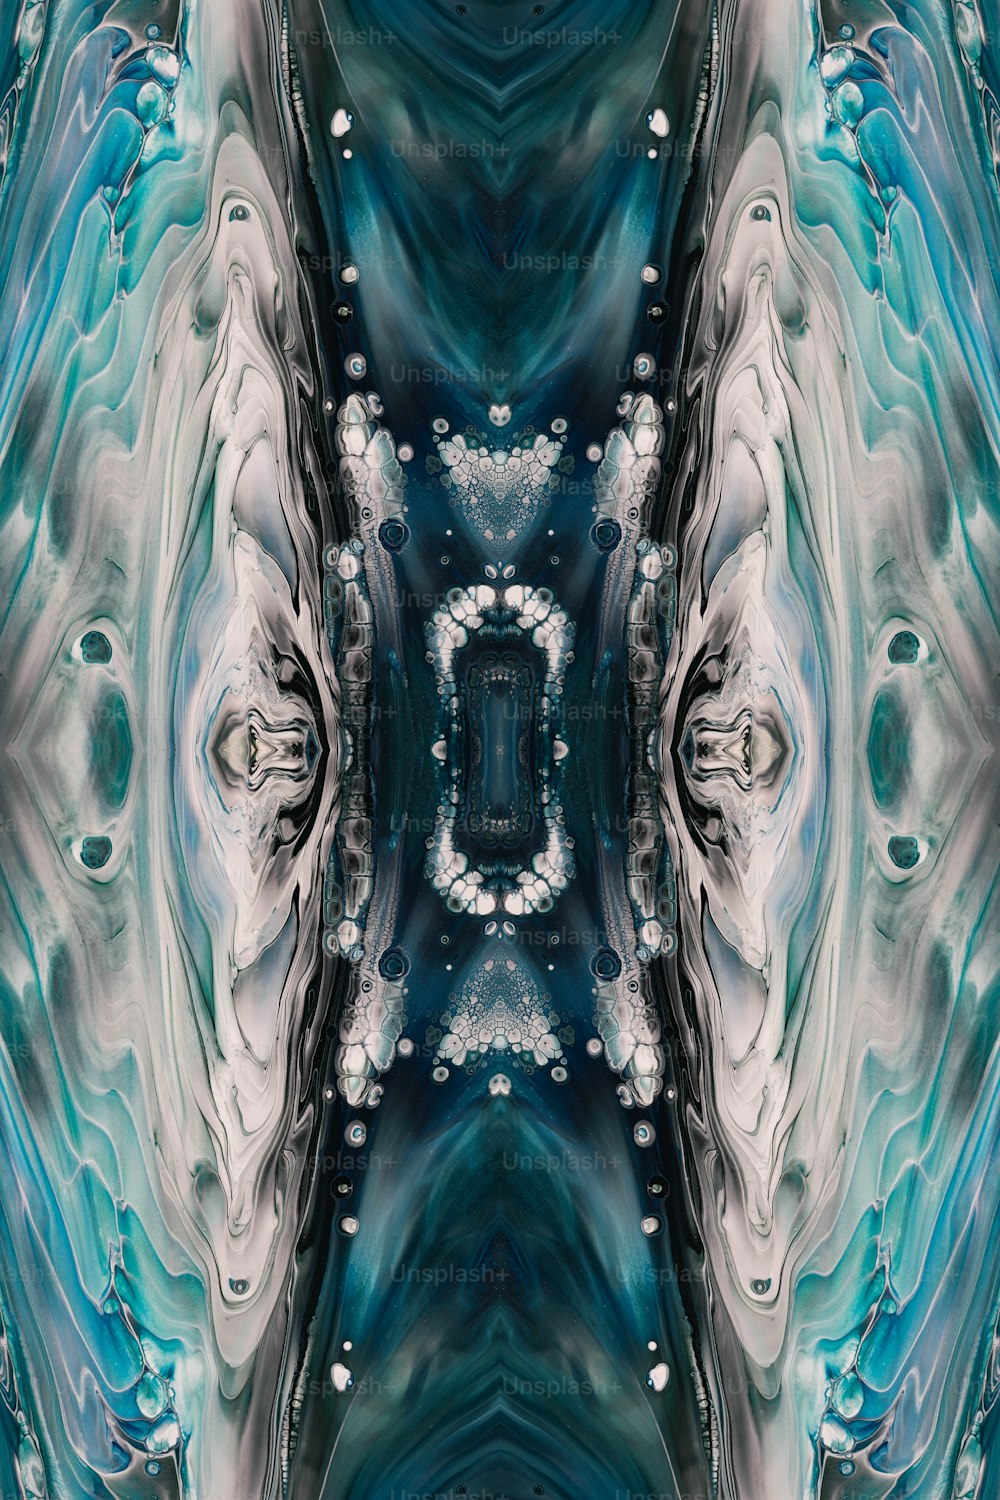 Ein abstraktes Bild eines blau-weißen Musters